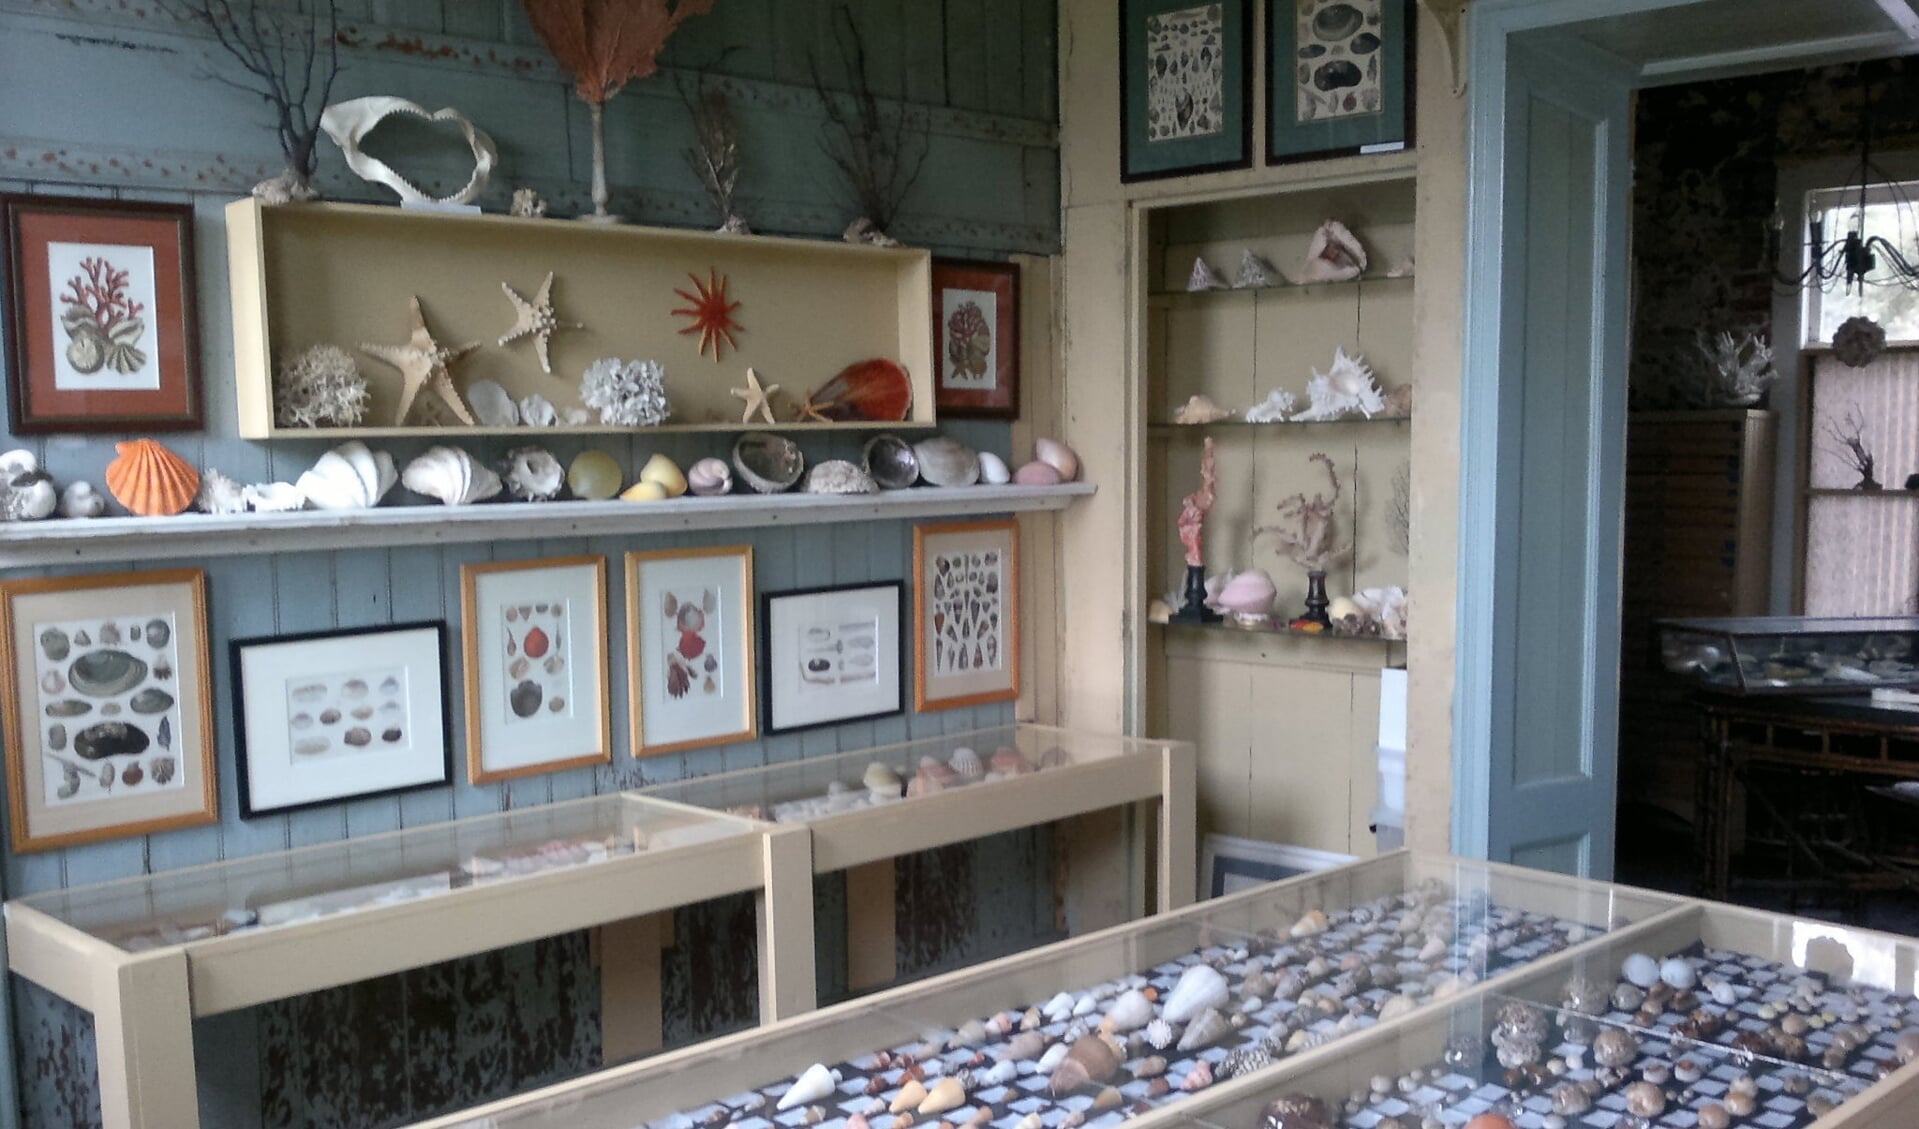 Museumhoeve Overslot biedt eveneens onderdak aan een schelpenmuseum.